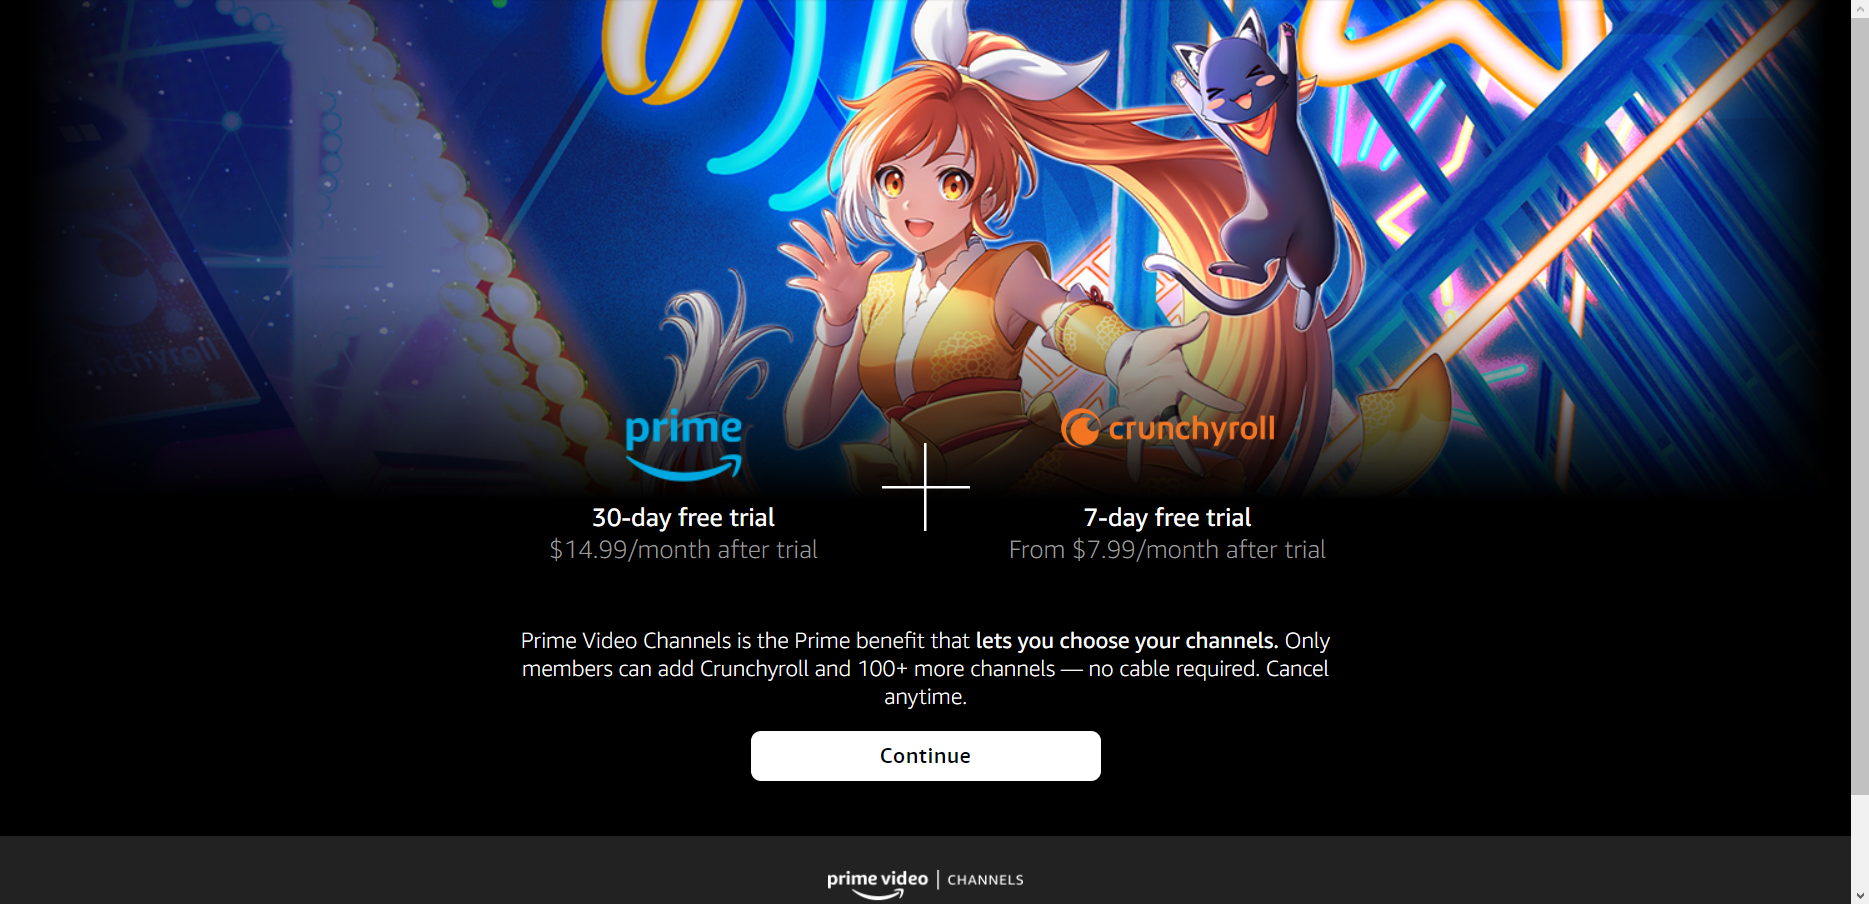 Imagem mostra banner da parceria entre os serviços Amazon Prime Video e Crunchyroll